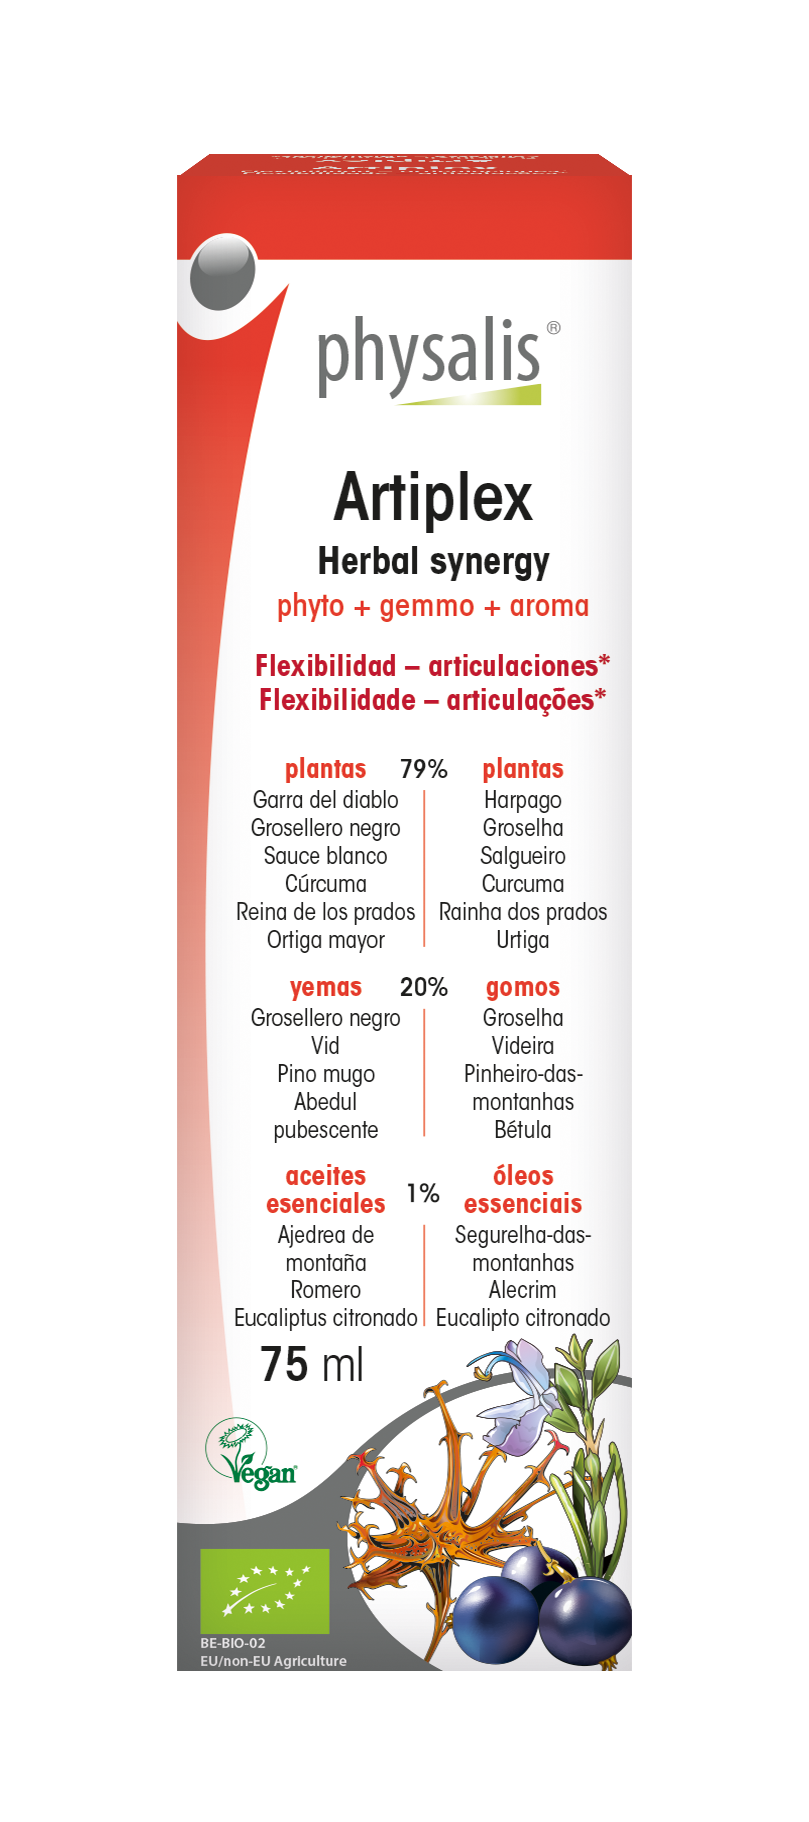 Artiplex - Herbal synergy